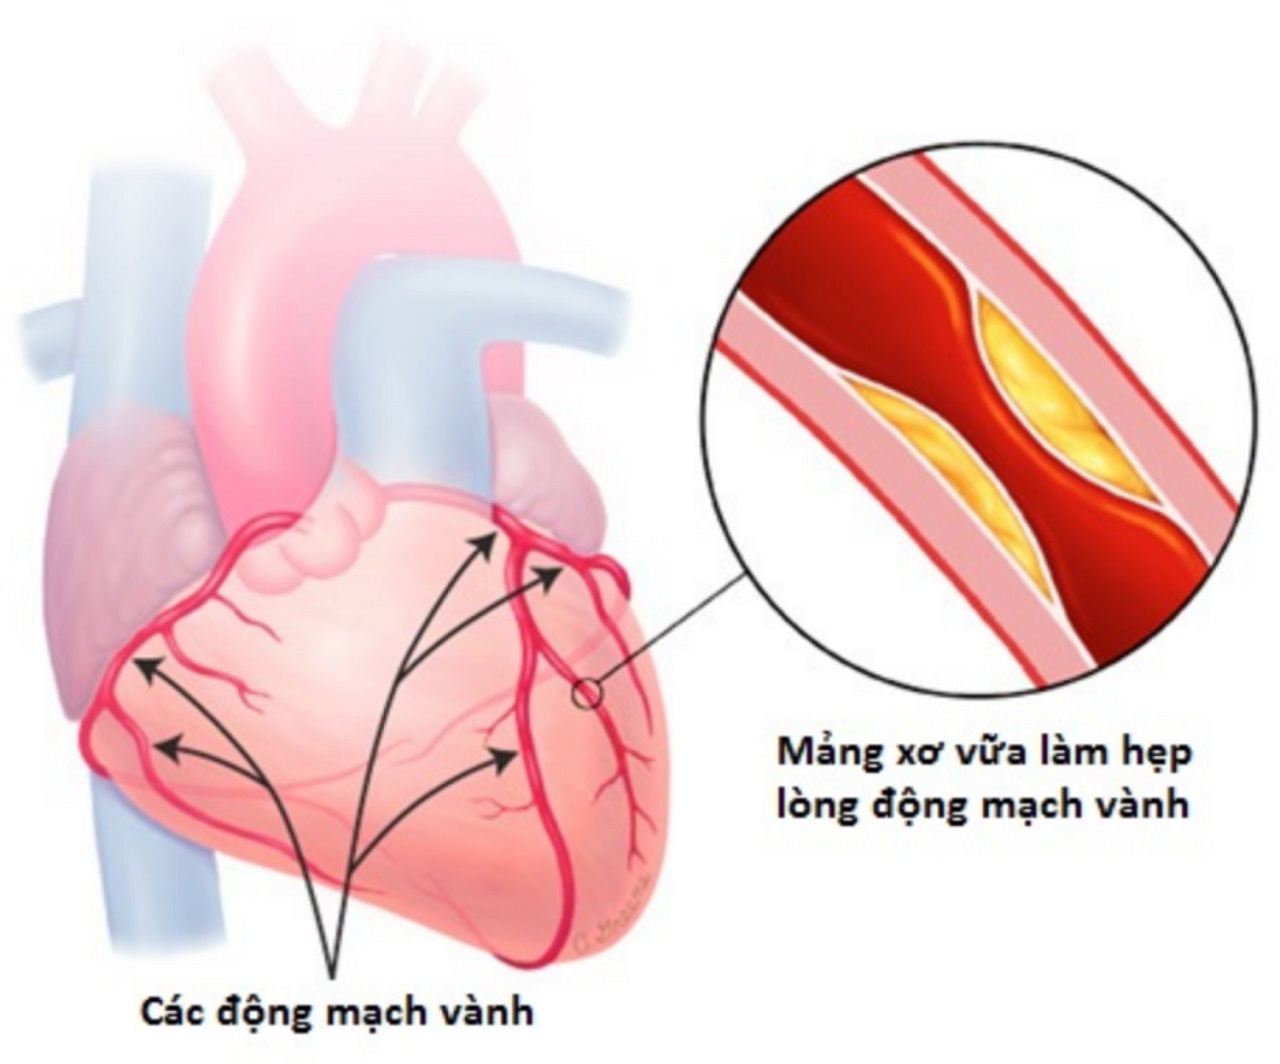 Nguyên nhân gây ra bệnh 3 thân mạch vành là gì?
